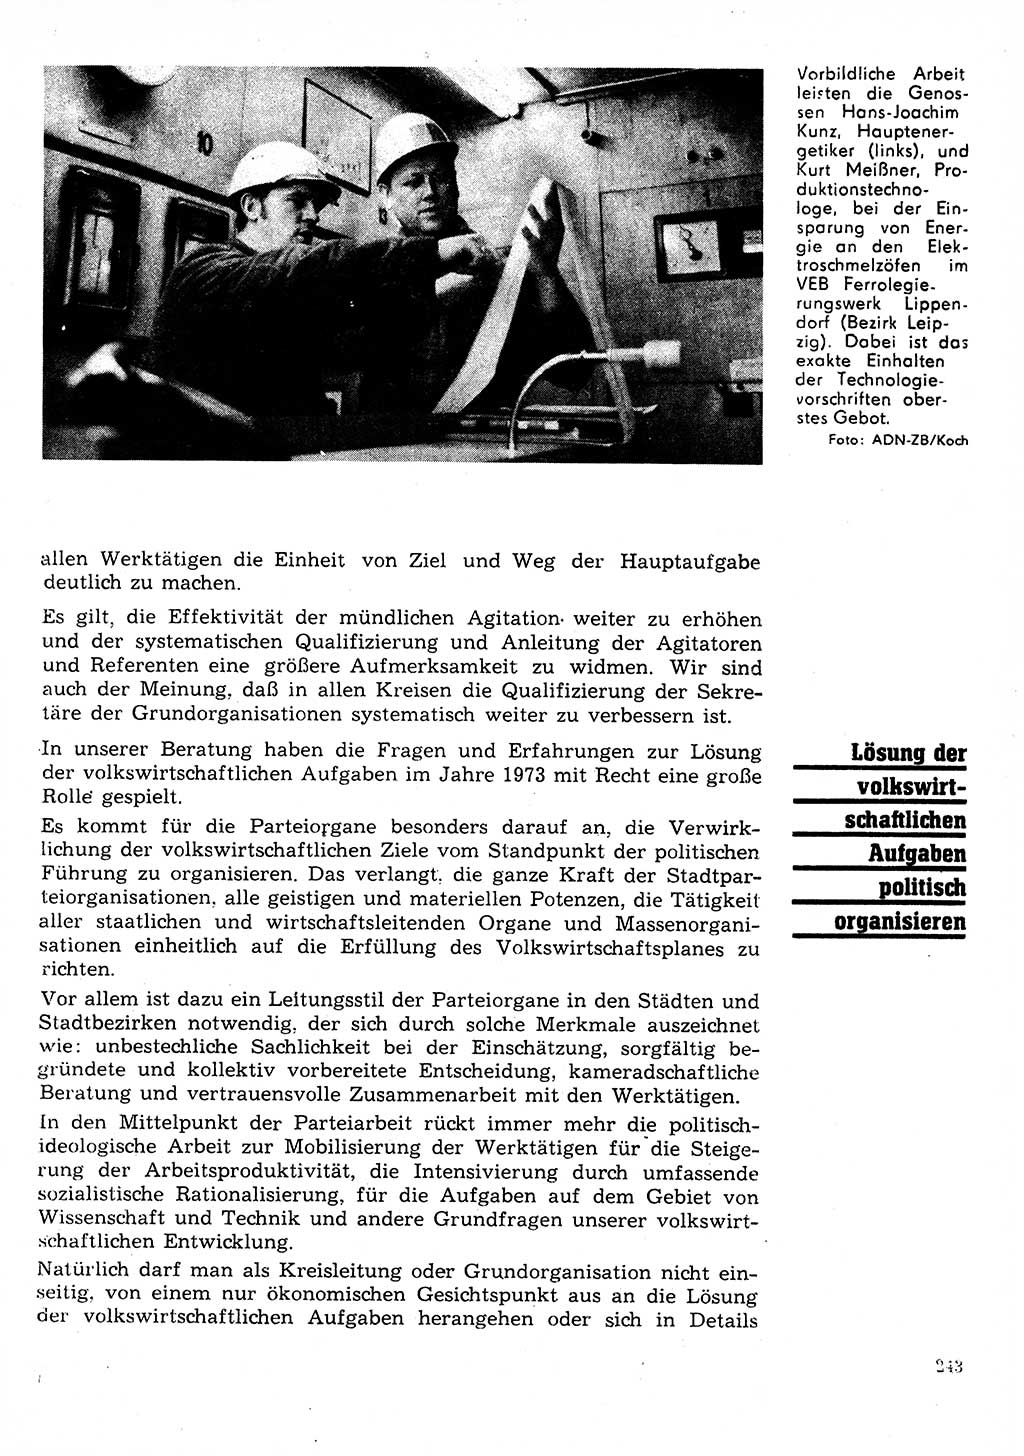 Neuer Weg (NW), Organ des Zentralkomitees (ZK) der SED (Sozialistische Einheitspartei Deutschlands) für Fragen des Parteilebens, 28. Jahrgang [Deutsche Demokratische Republik (DDR)] 1973, Seite 243 (NW ZK SED DDR 1973, S. 243)